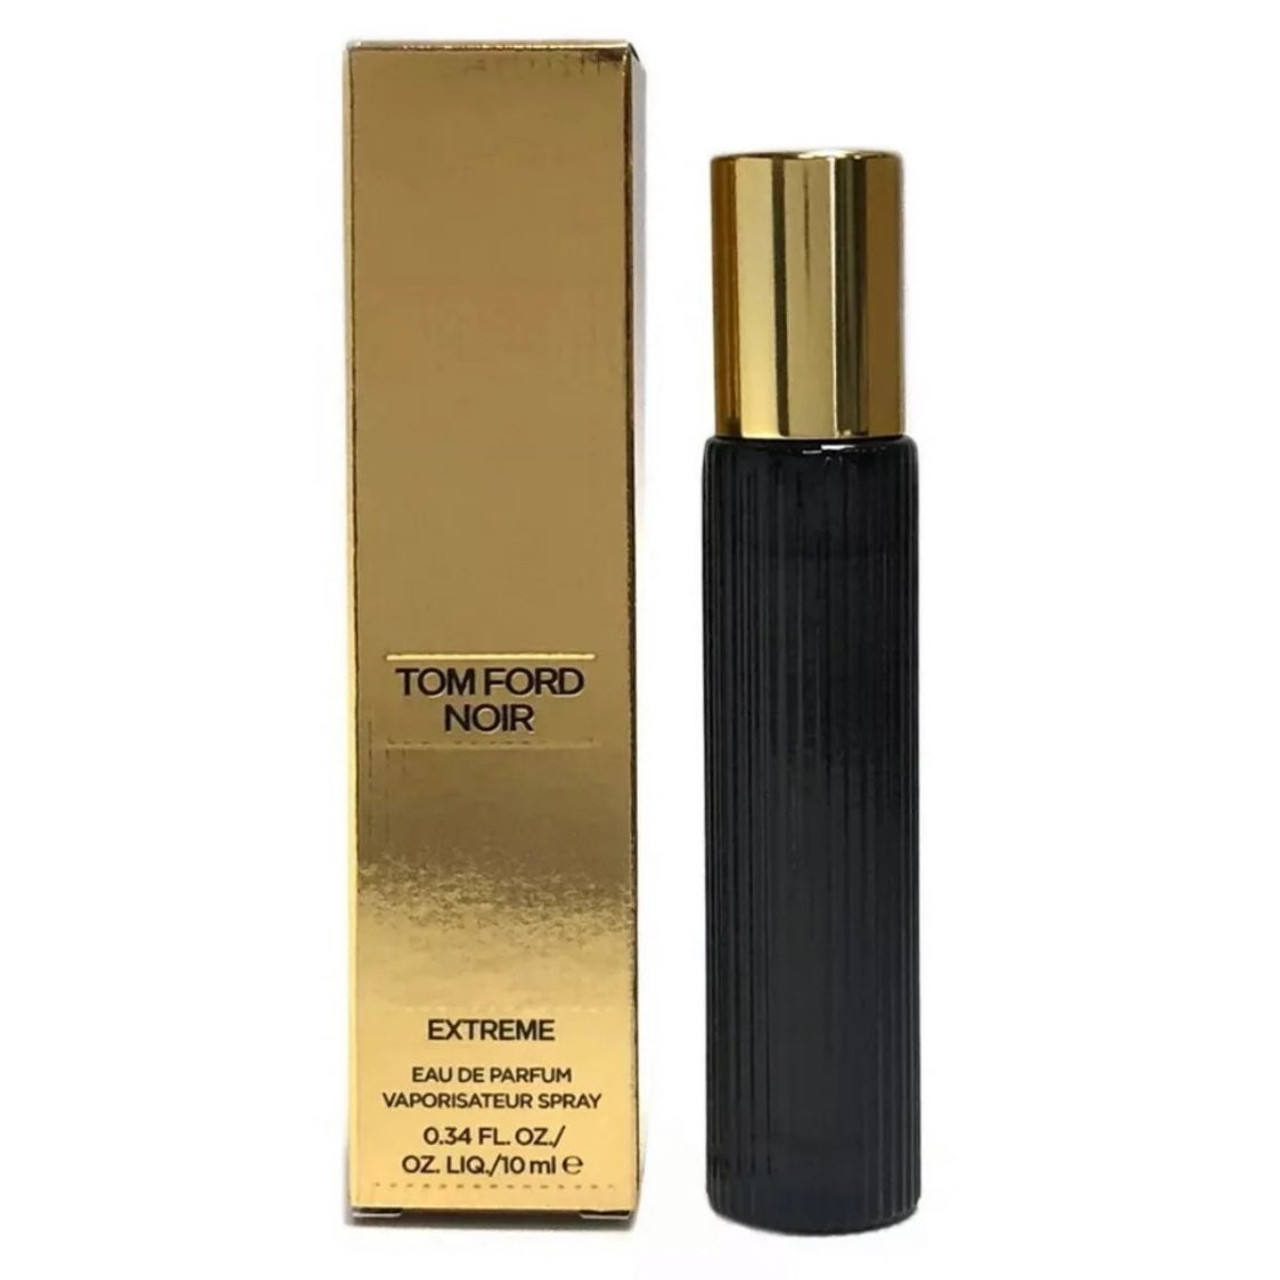 Noir Extreme by Tom Ford (Eau de Parfum) » Reviews & Perfume Facts